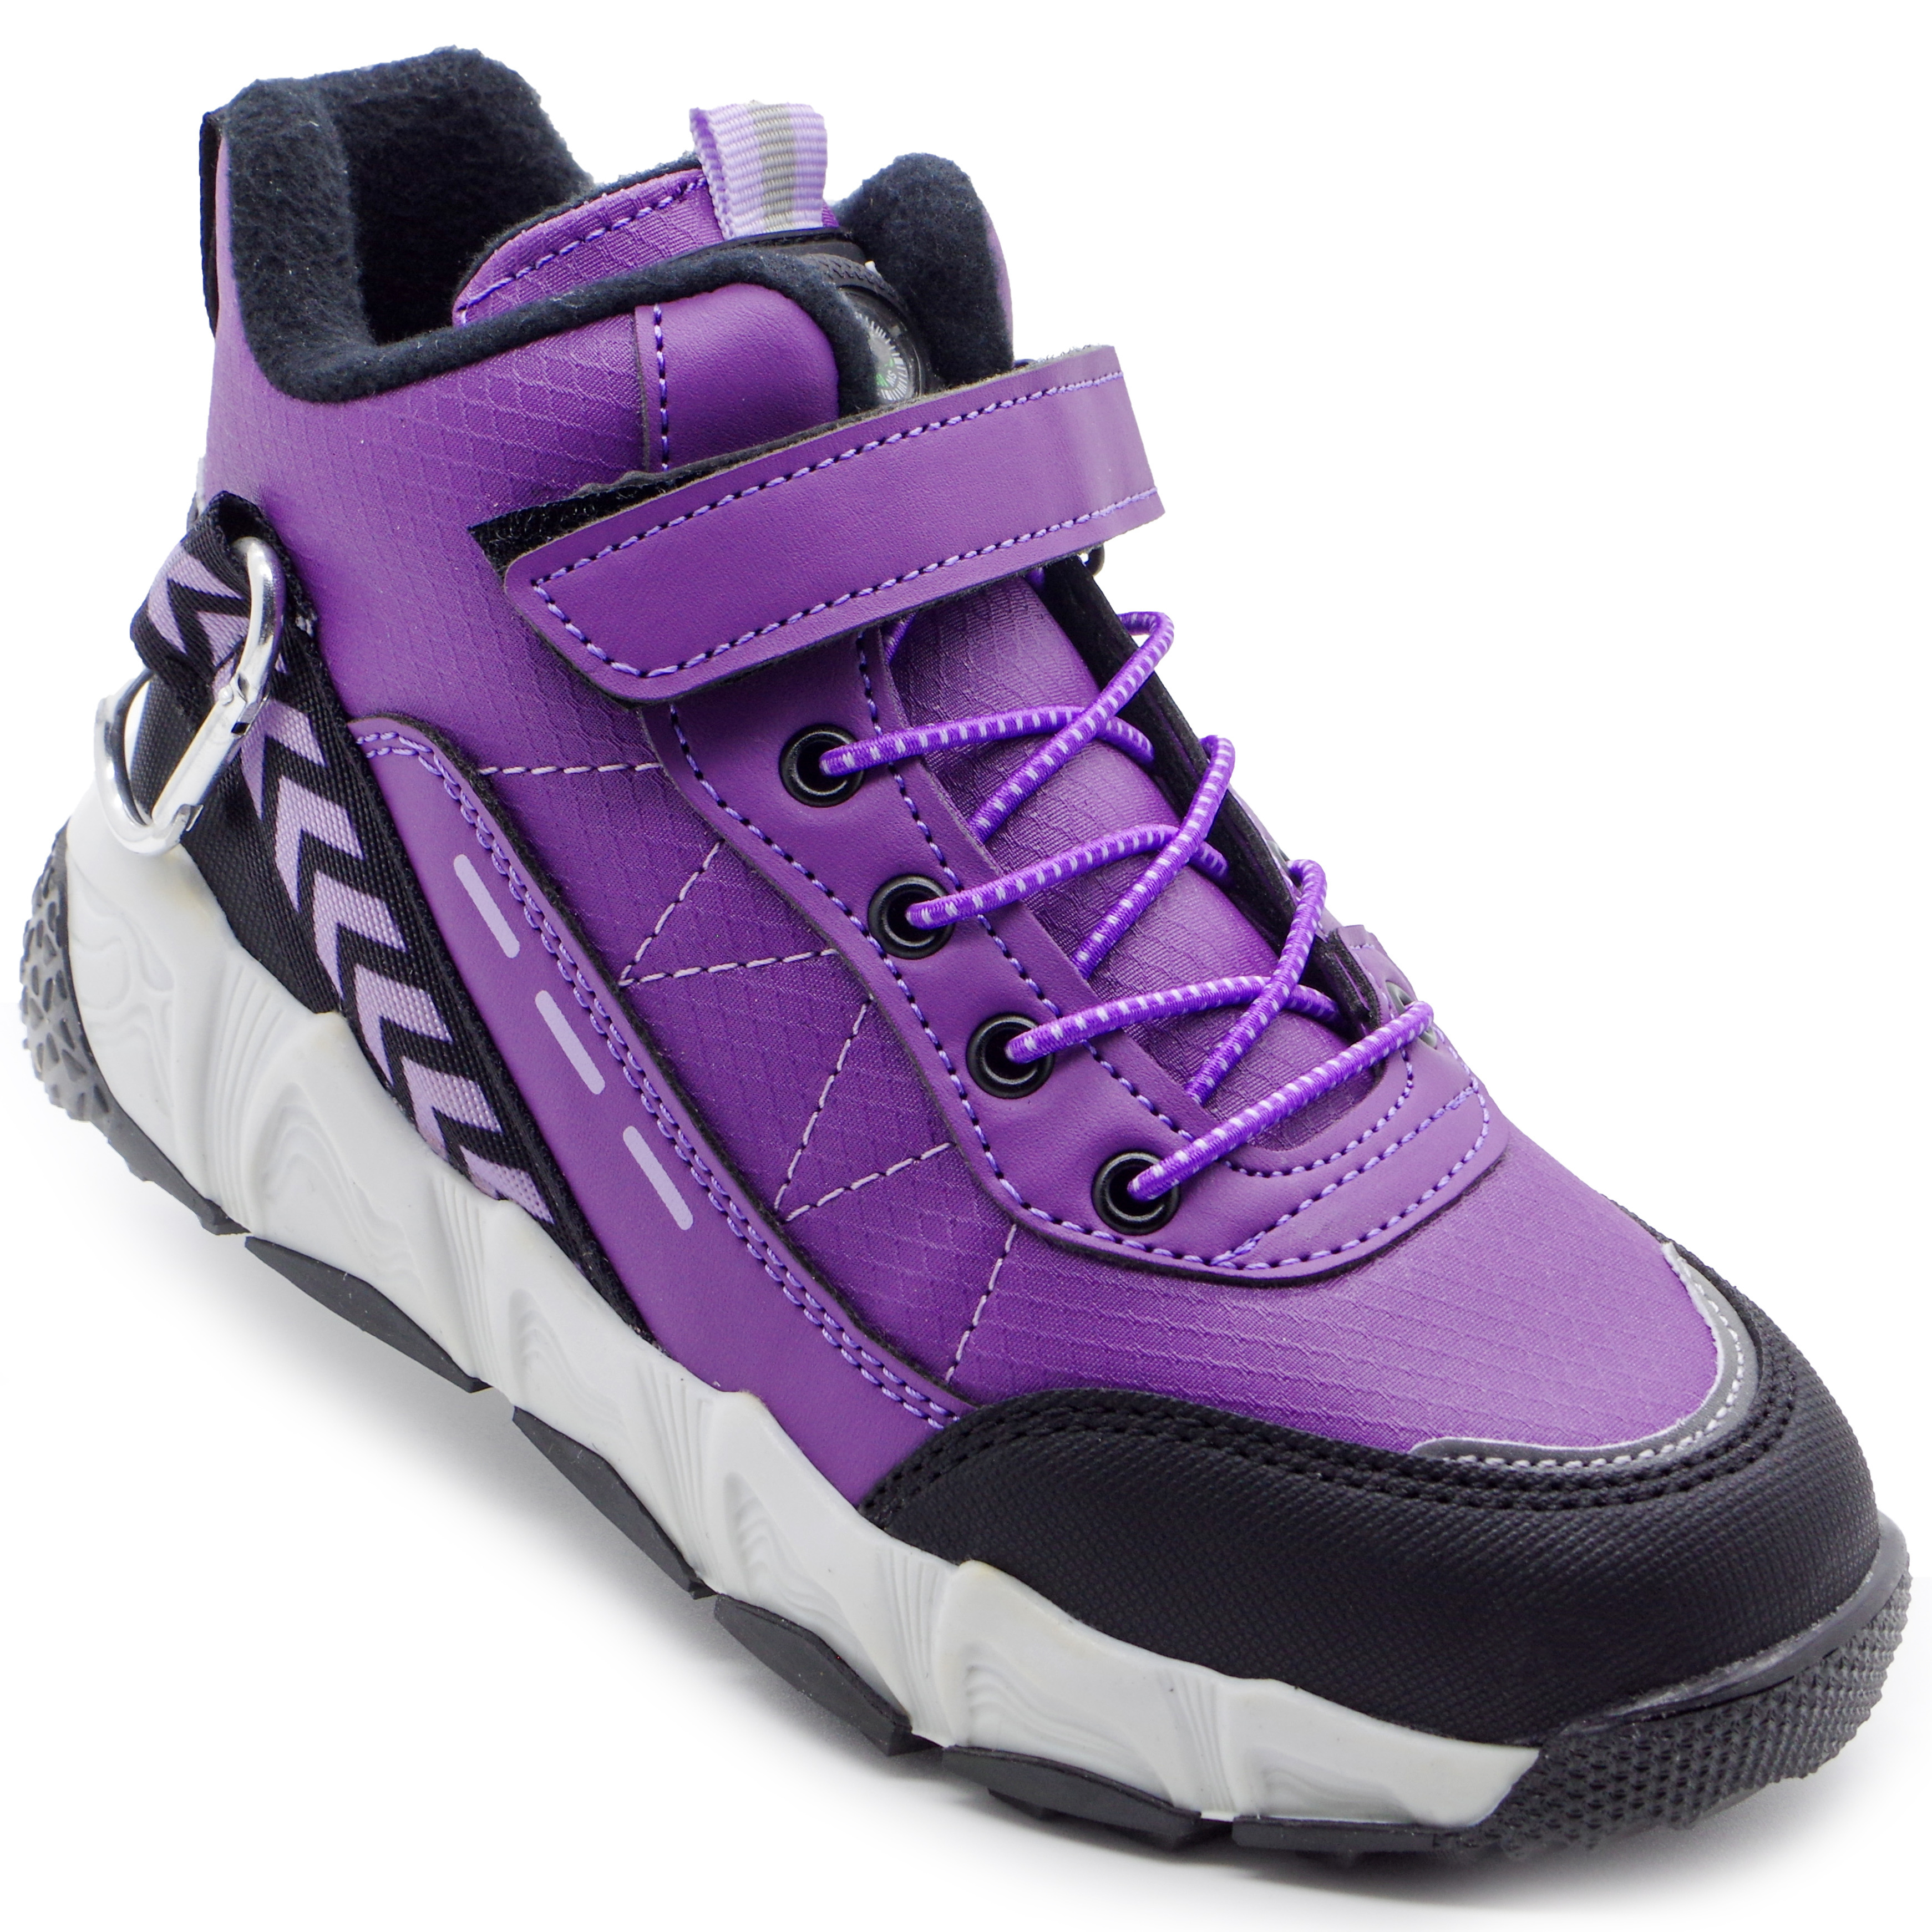 Мембранные ботинки (2255) материал Мембрана, цвет Фиолетовый  для девочки 32-36 размеры – Sole Kids, Днепр